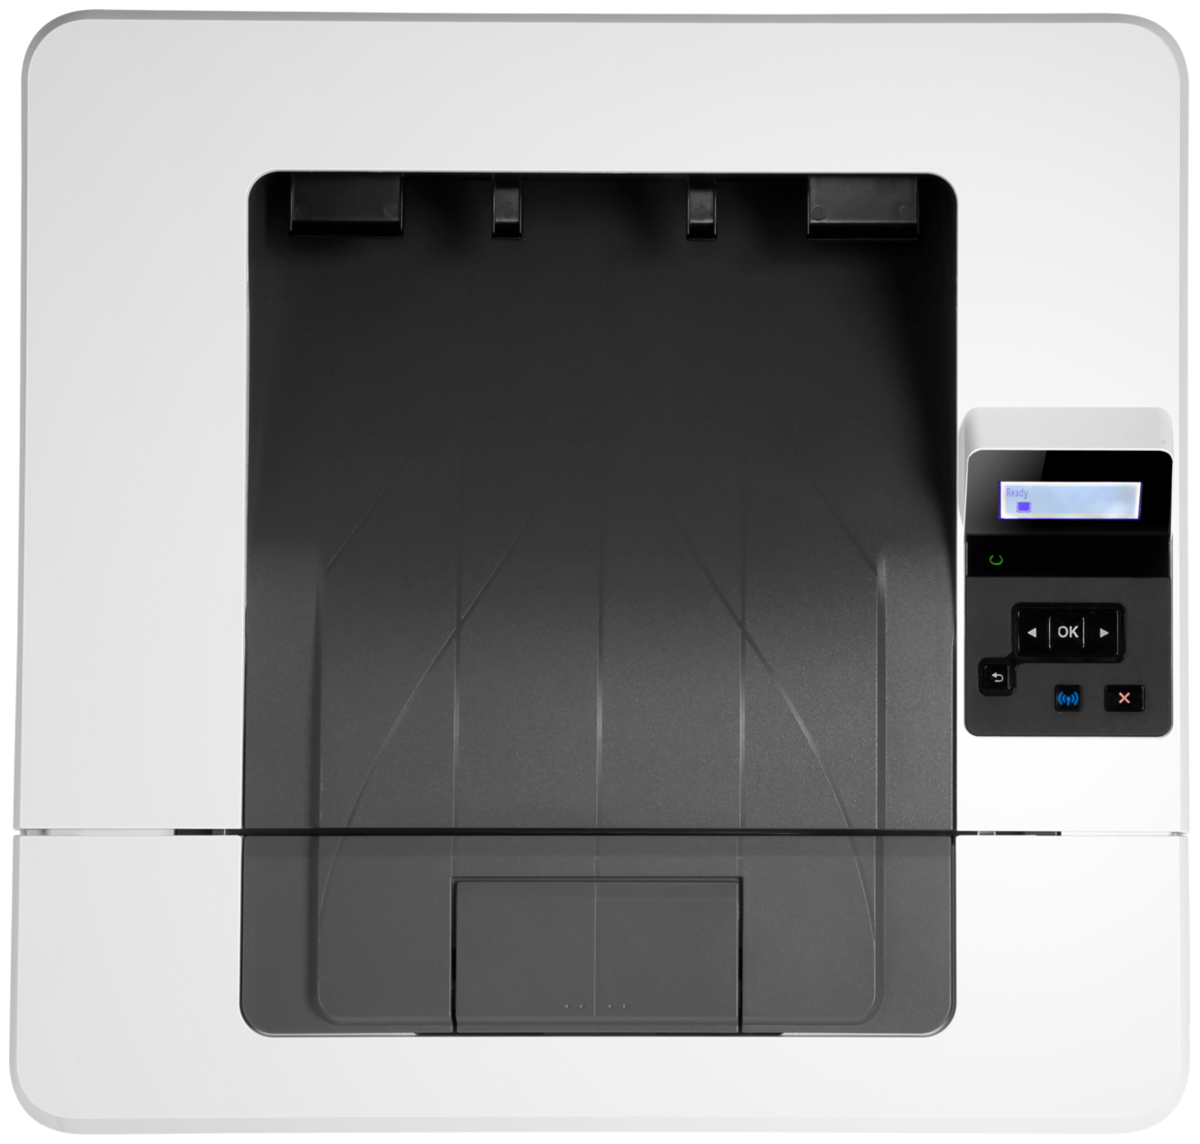 Купить Принтер HP LaserJet Pro M404dw (W1A56A_S)